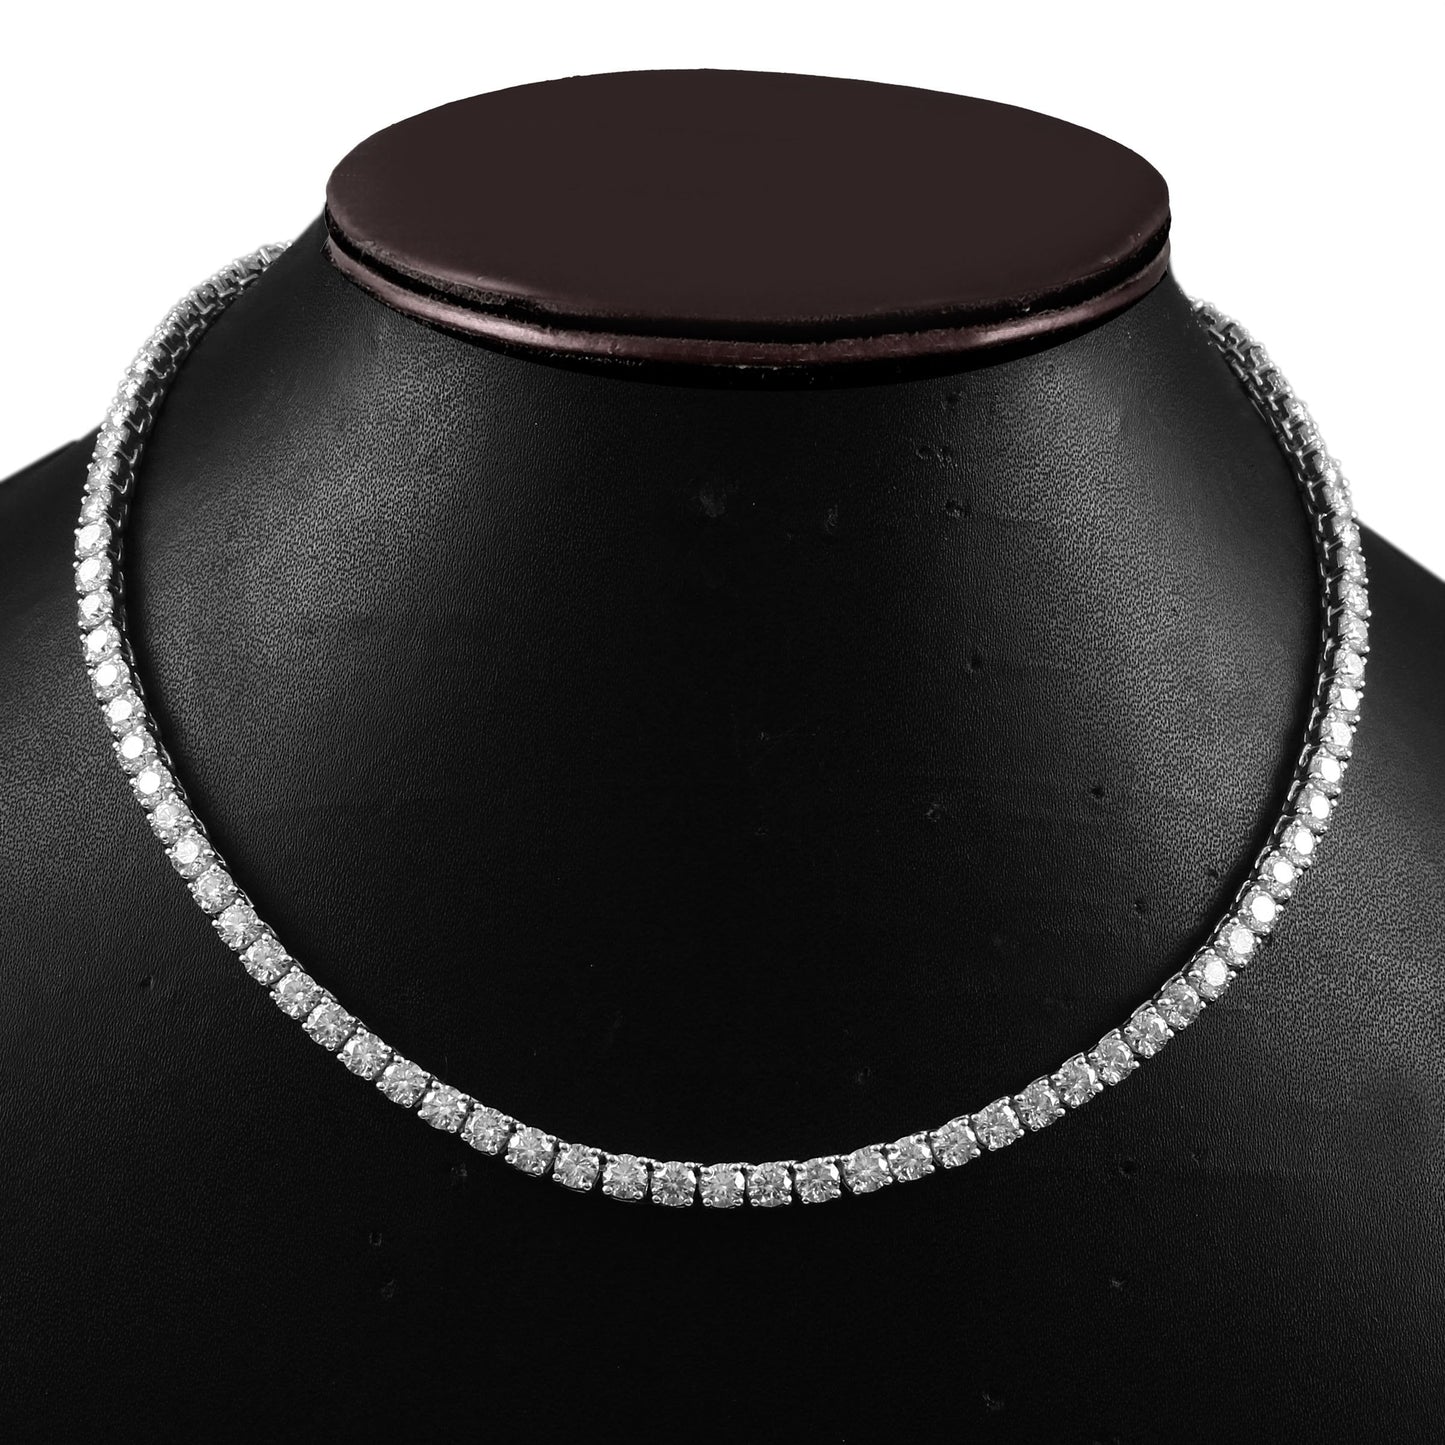 Lab Diamond Tennis Necklace - 2.5 MM round lab diamonds